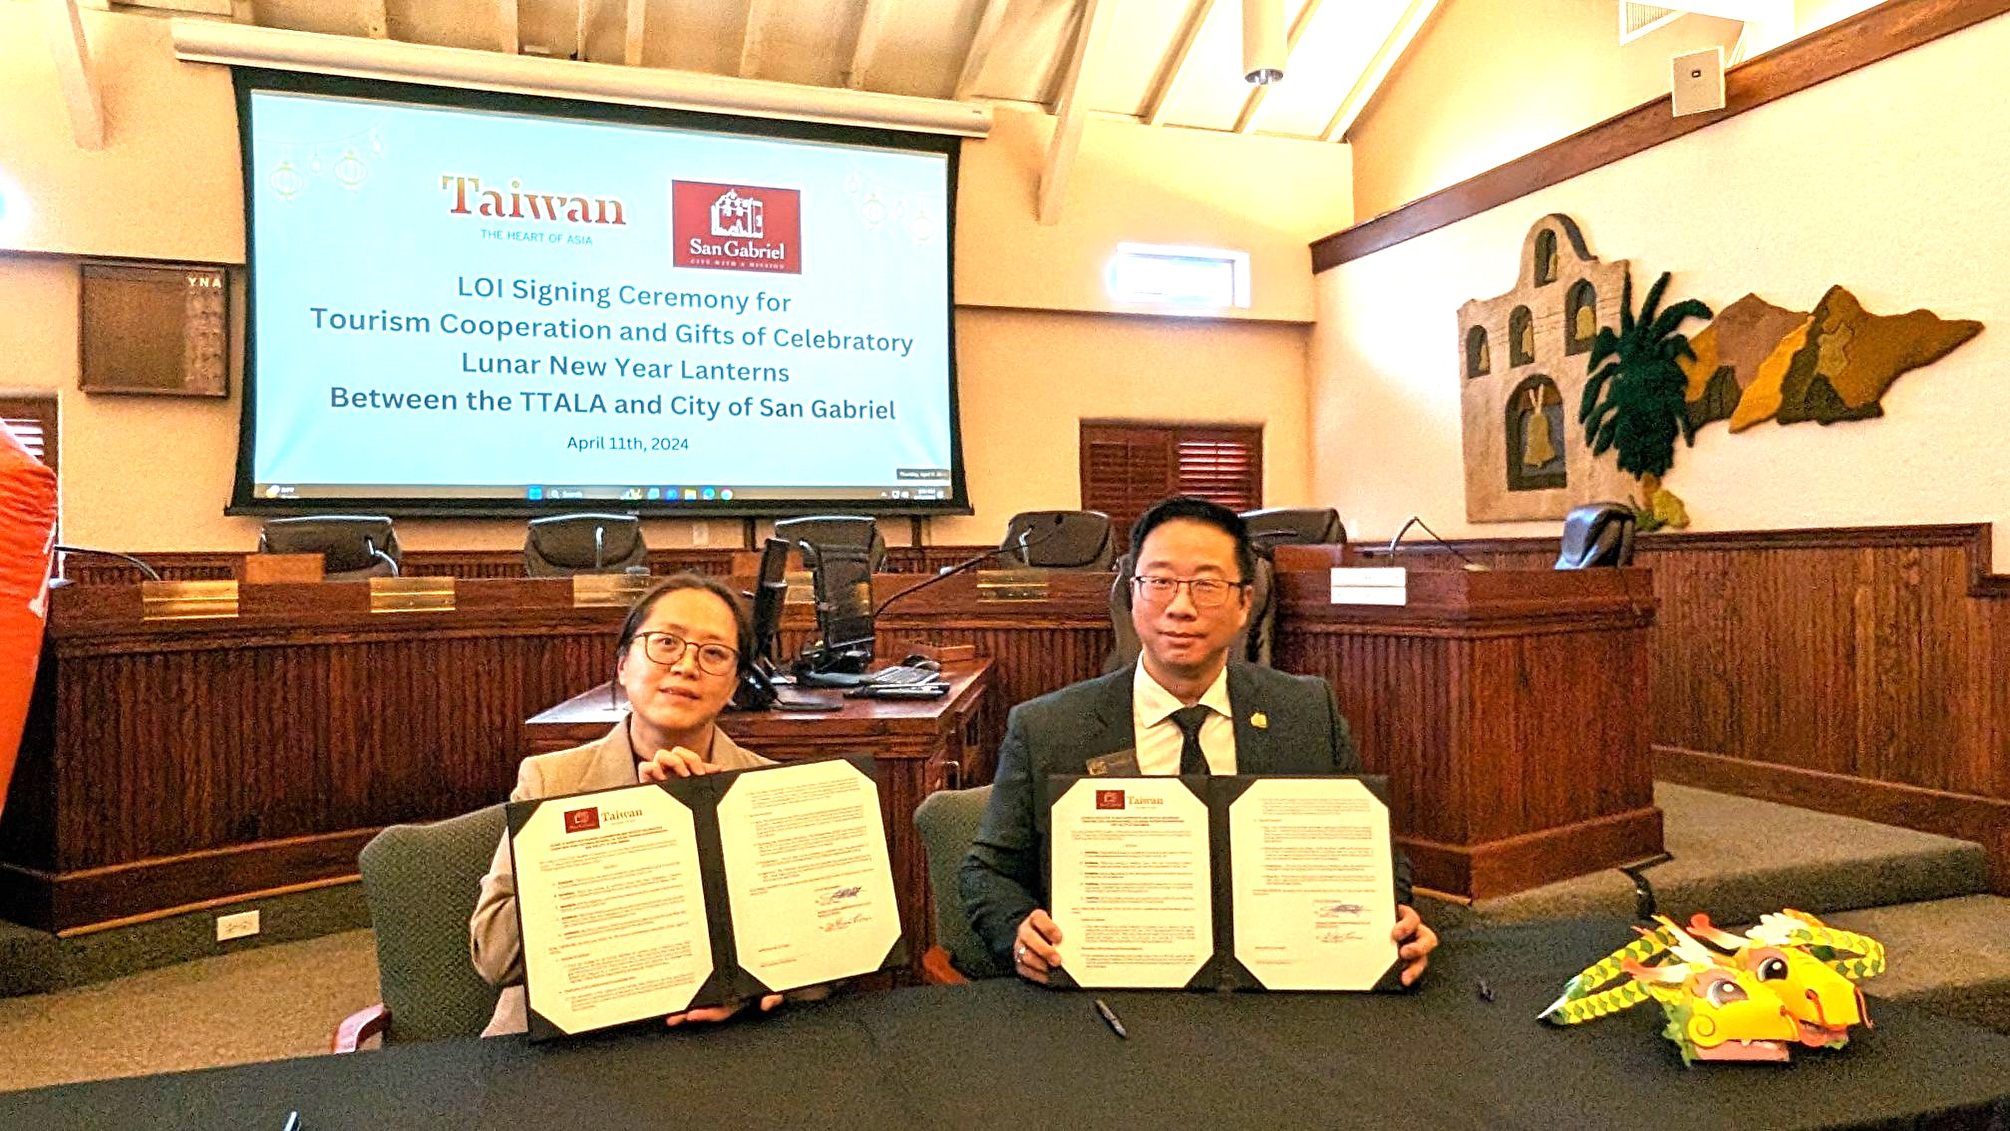 簽署10年合作 「台灣燈會」2025年聖蓋博市見